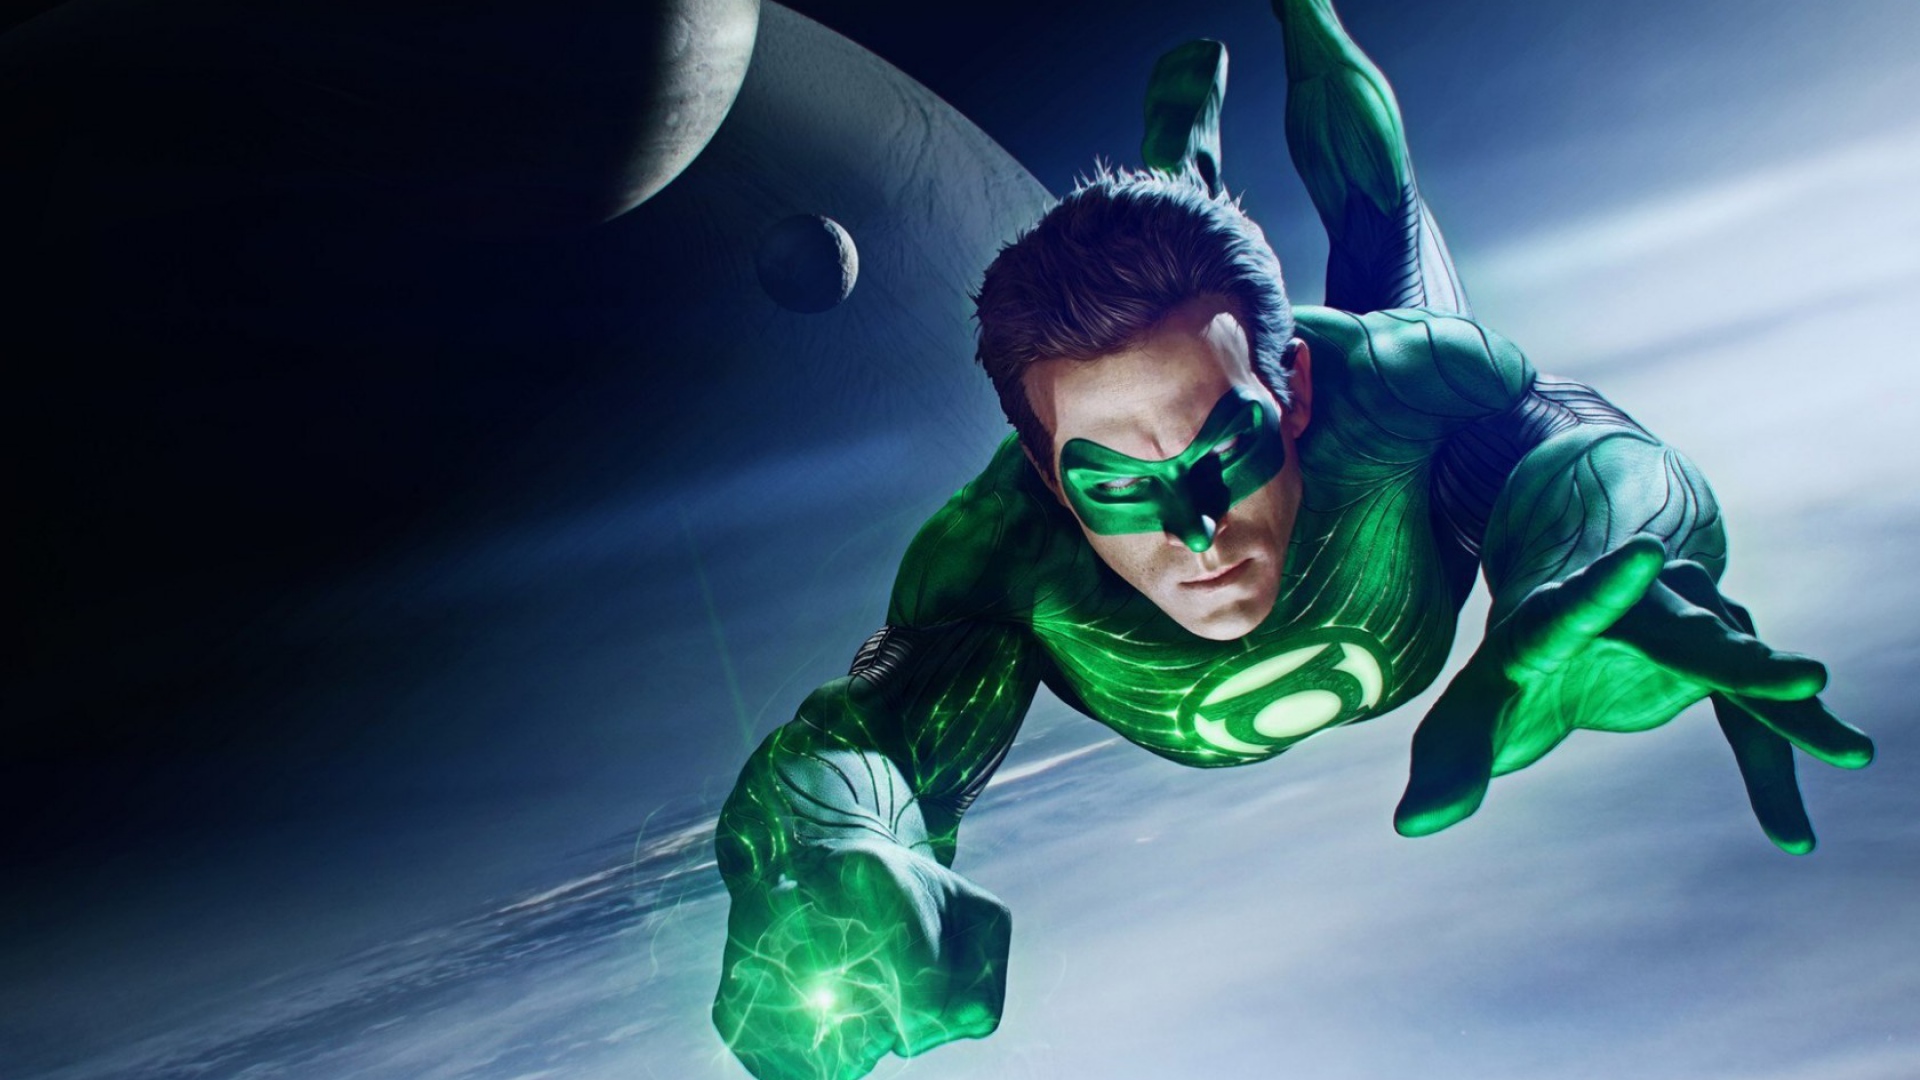 papier peint lanterne verte,la lanterne verte,personnage fictif,homme chauve souris,ligue de justice,super héros